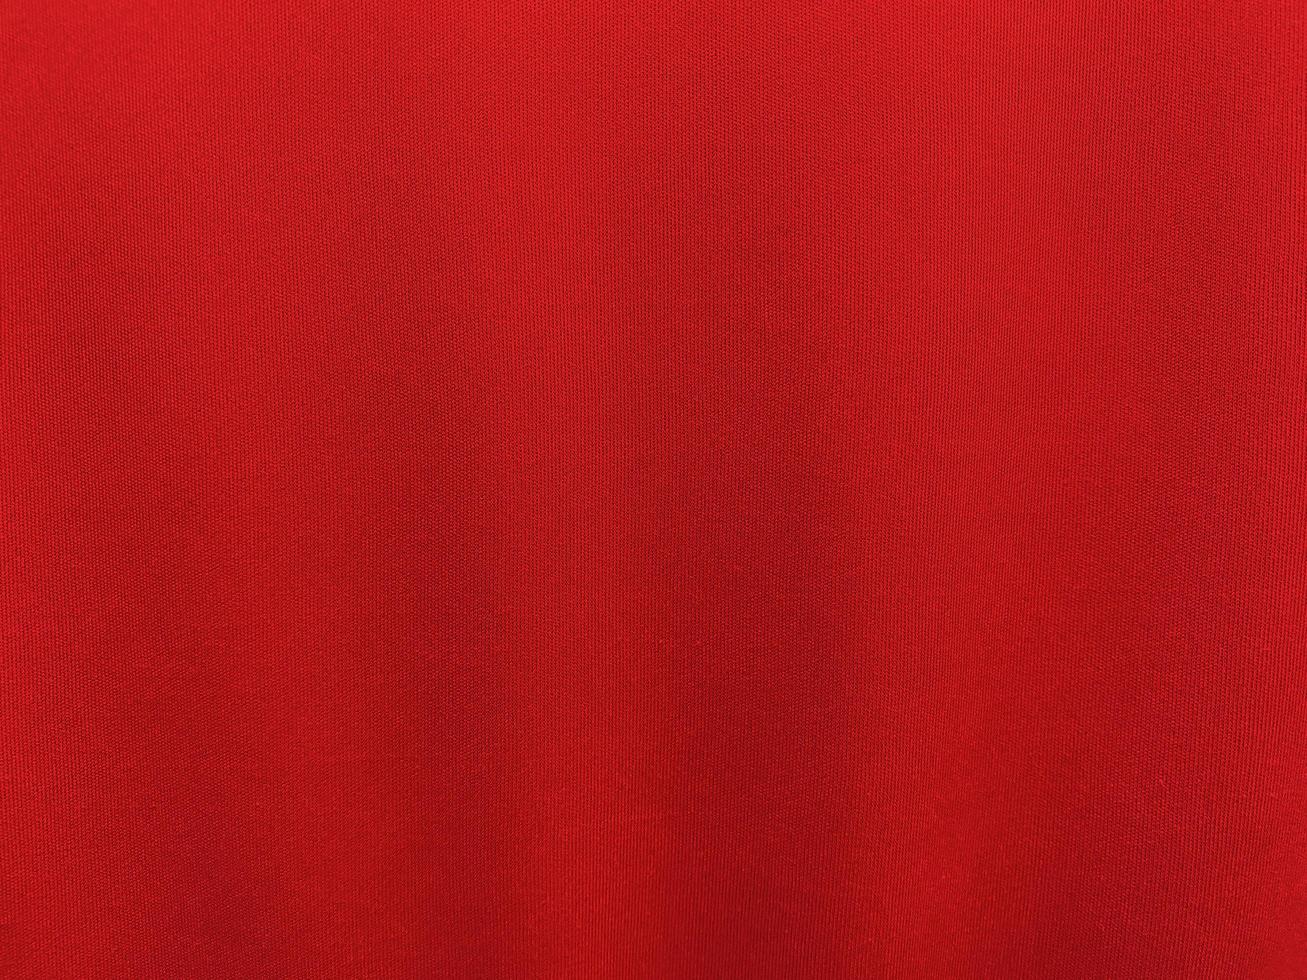 textura de tecido de algodão vermelho usada como plano de fundo. fundo de tecido vermelho vazio de material têxtil macio e liso. há espaço para o texto.. foto